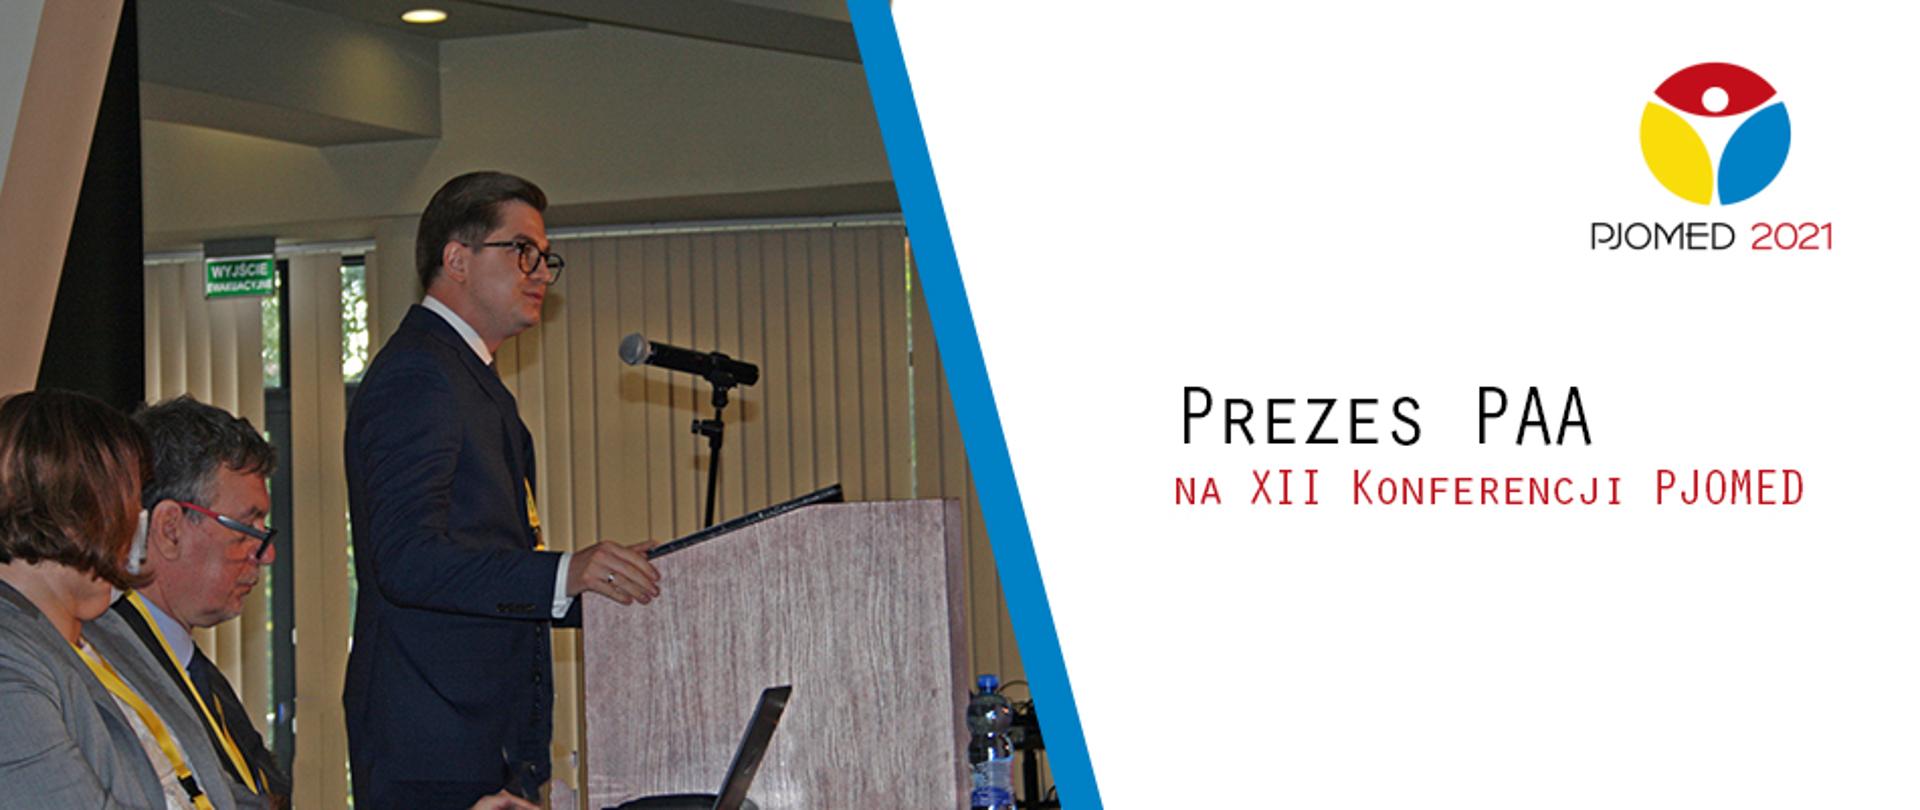 Dr Łukasz Młynarkiewicz, Prezes Państwowej Agencji Atomistyki na konferencji PJOMED 2021. Prezes stoi za mównicą z mikrofonem. Obok zdjęcia grafika - na białym tle czerwone i czarne napisy: "Prezes PAA na XII Konferencji PJOMED"